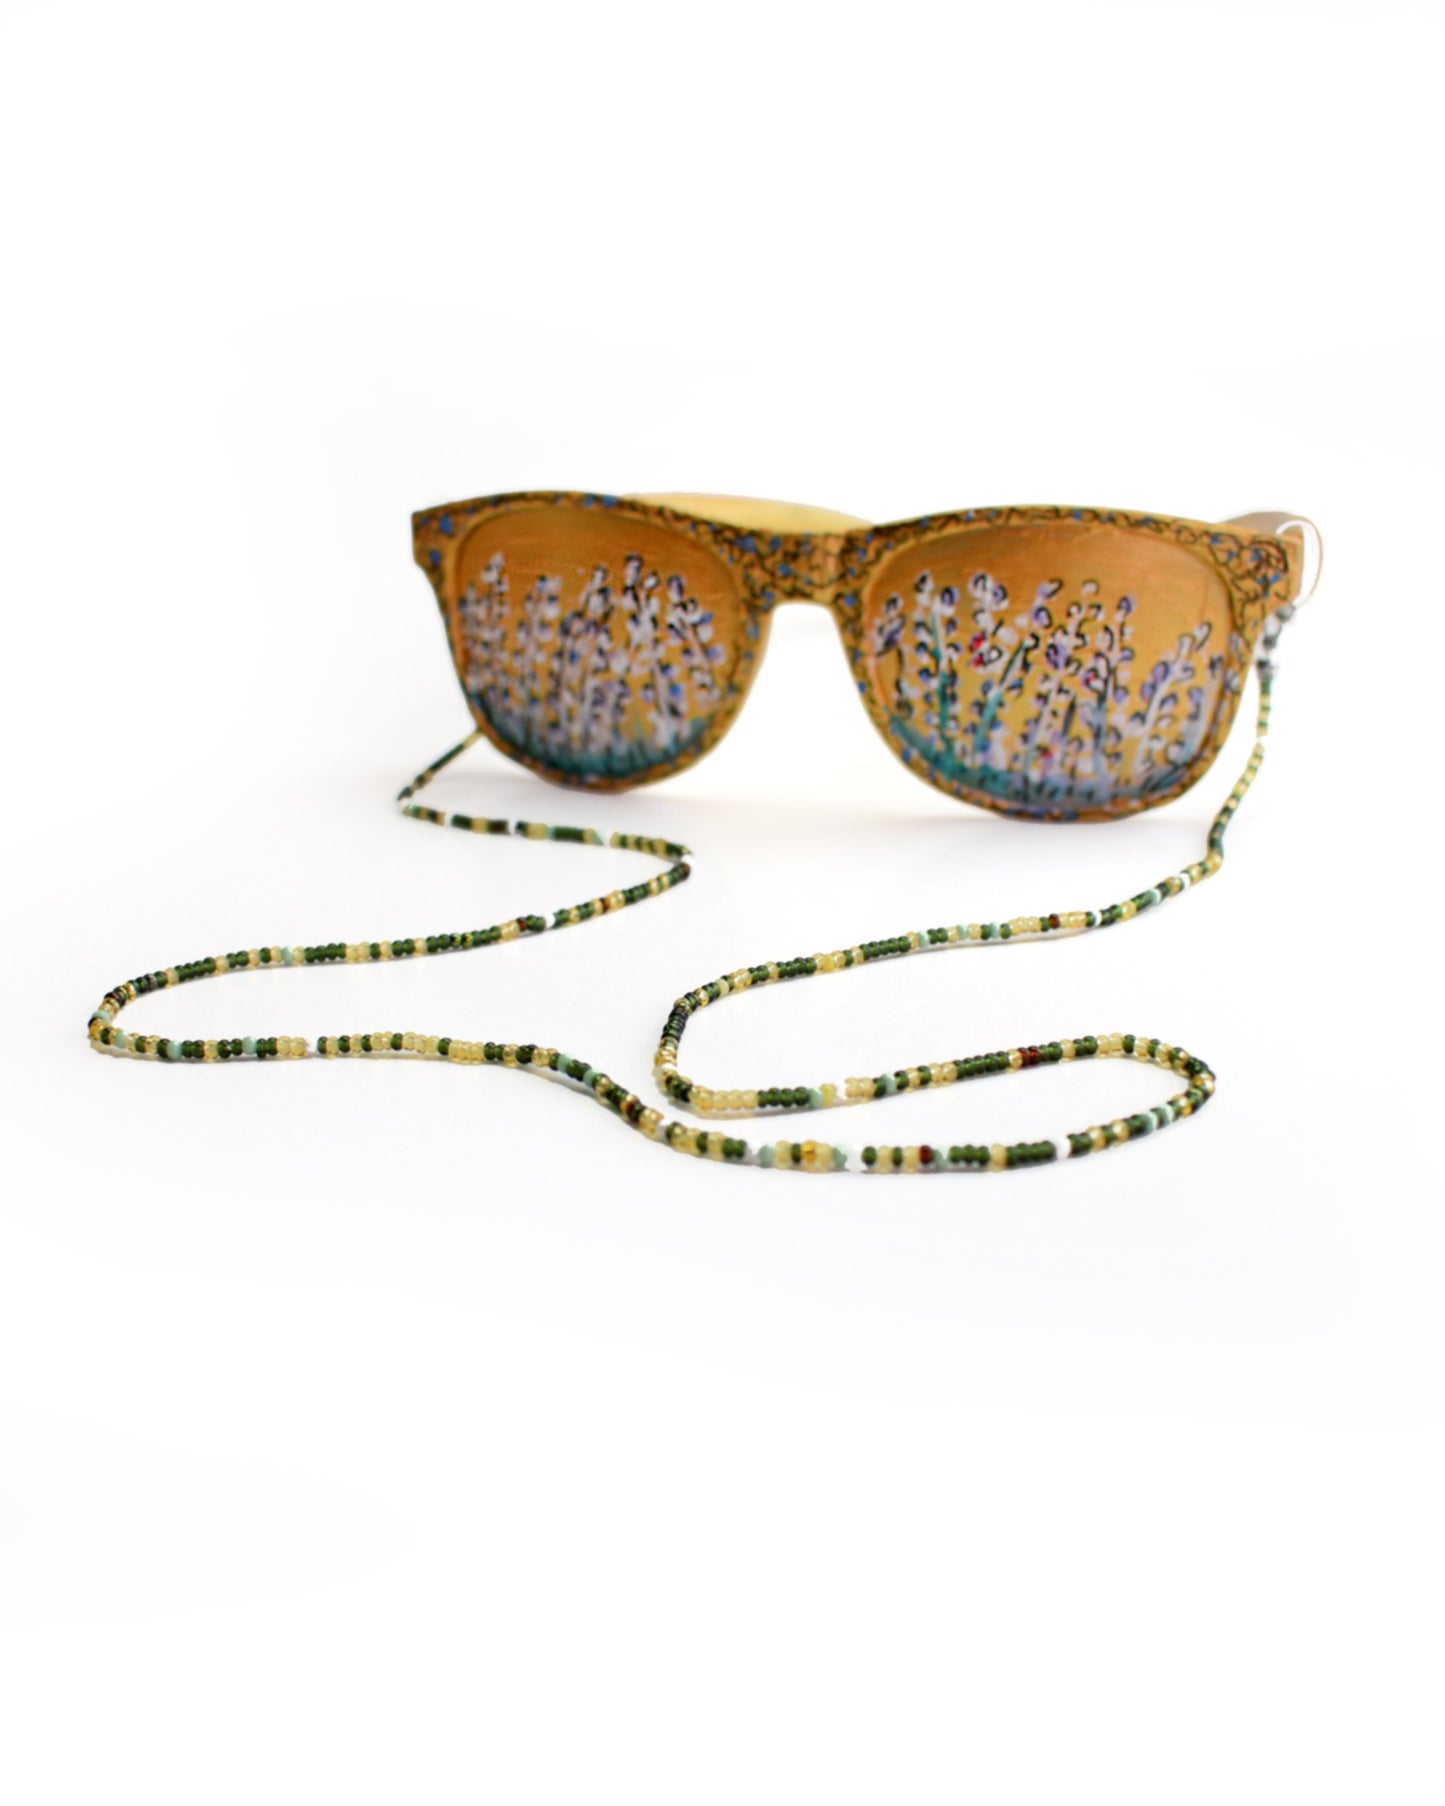 Acessórios de moda online - Loja de bijuterias Talai - Corrente de óculos de missangas multicoloridas, com destaque para o verde. Uma combinação de cores muito bonita para usar em qualquer altura do ano. Veja mais na nossa loja online e compre bijuteria a condizer.